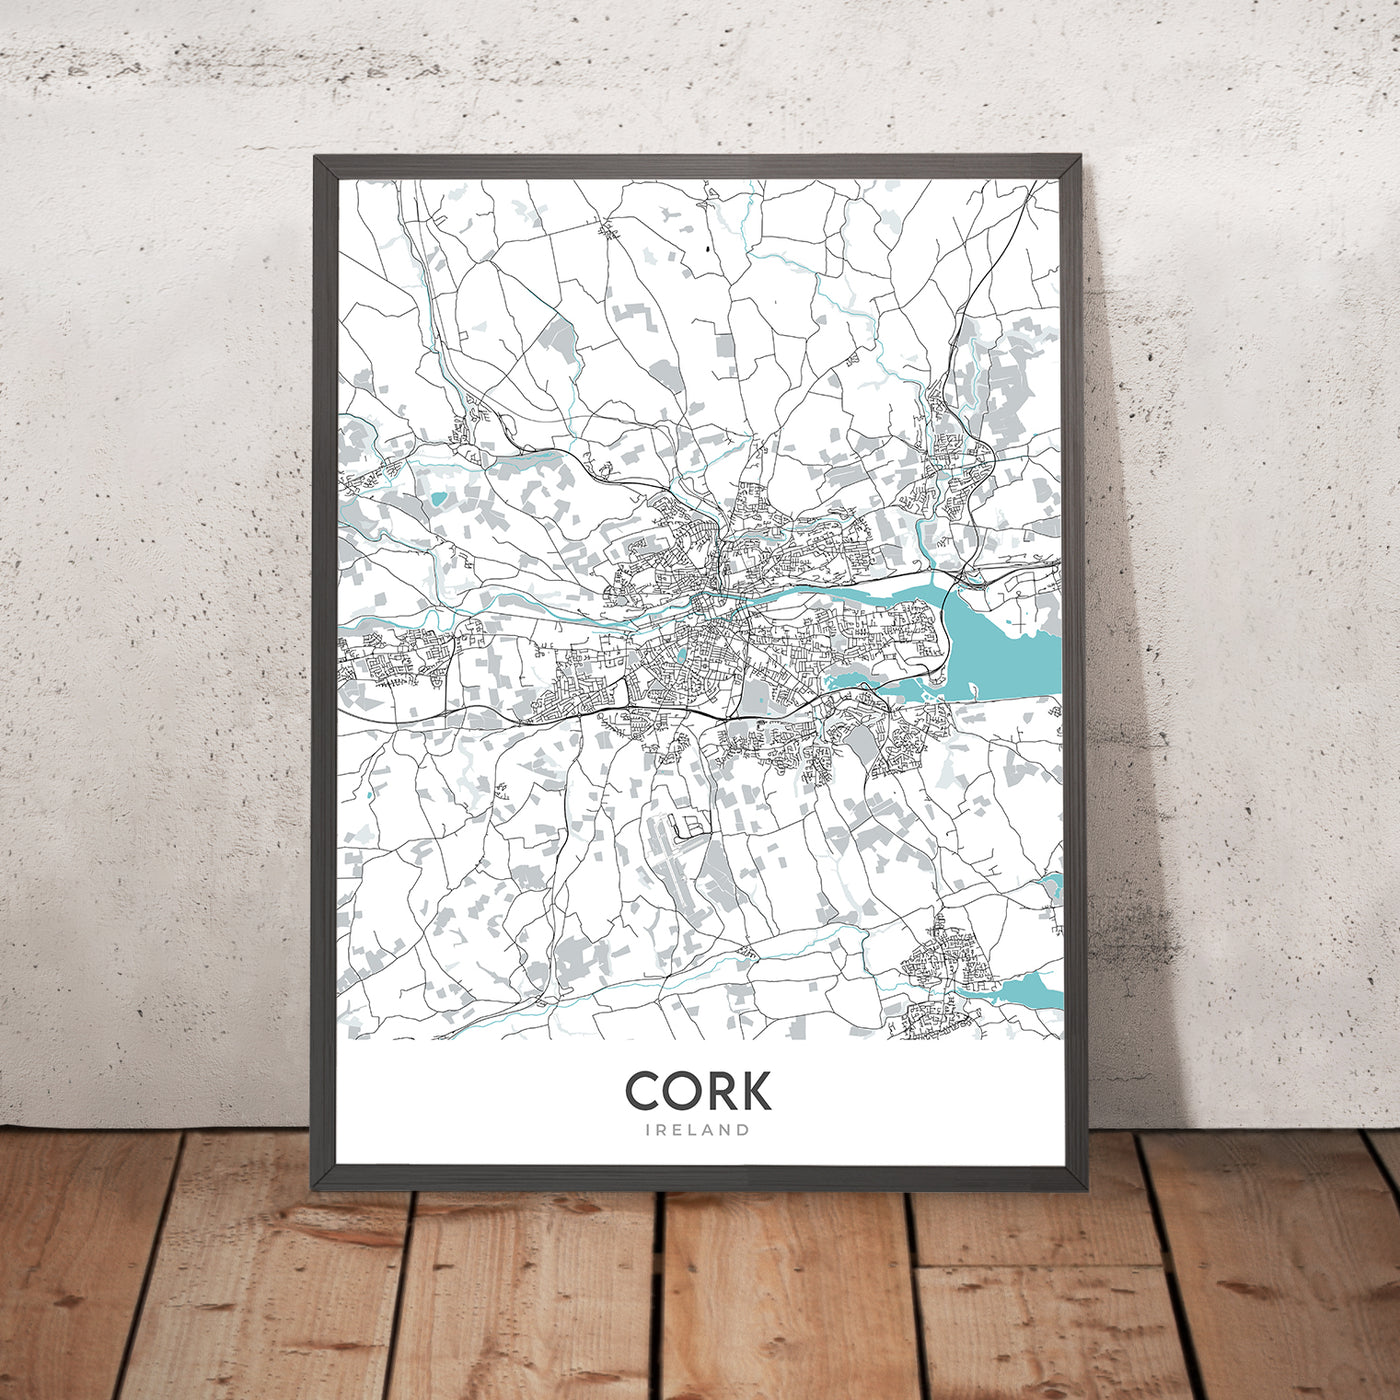 Plan de la ville moderne de Cork, Irlande : château de Blarney, hôtel de ville de Cork, parc Fitzgerald, N20, N22